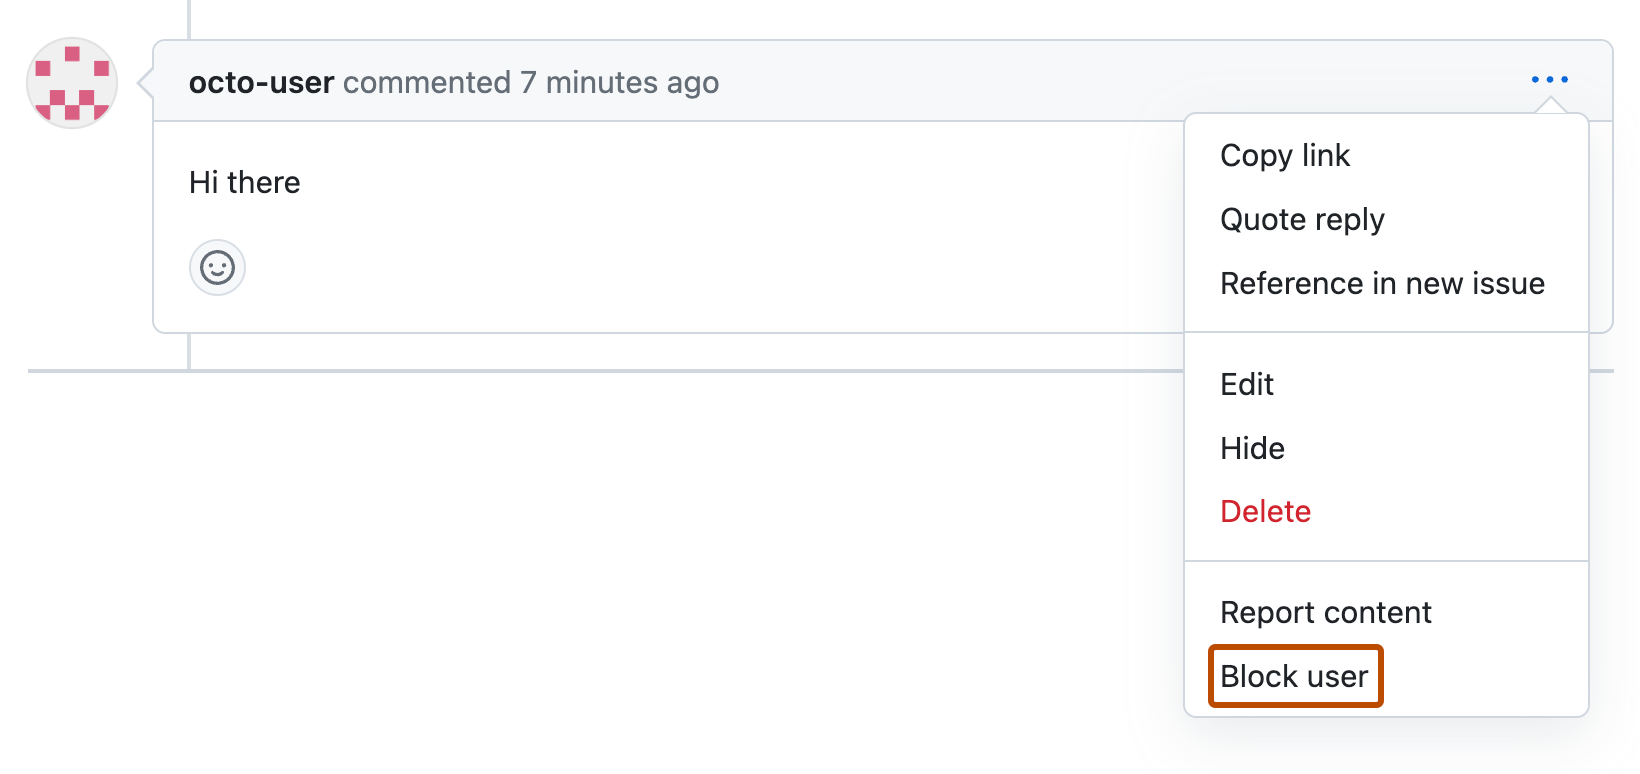 Снимок экрана: комментарий запроса на вытягивание по окто-пользователю. Под значком трех горизонтальных точек разворачивается раскрывающееся меню, а "Блокировать пользователя" выделен оранжевым цветом.